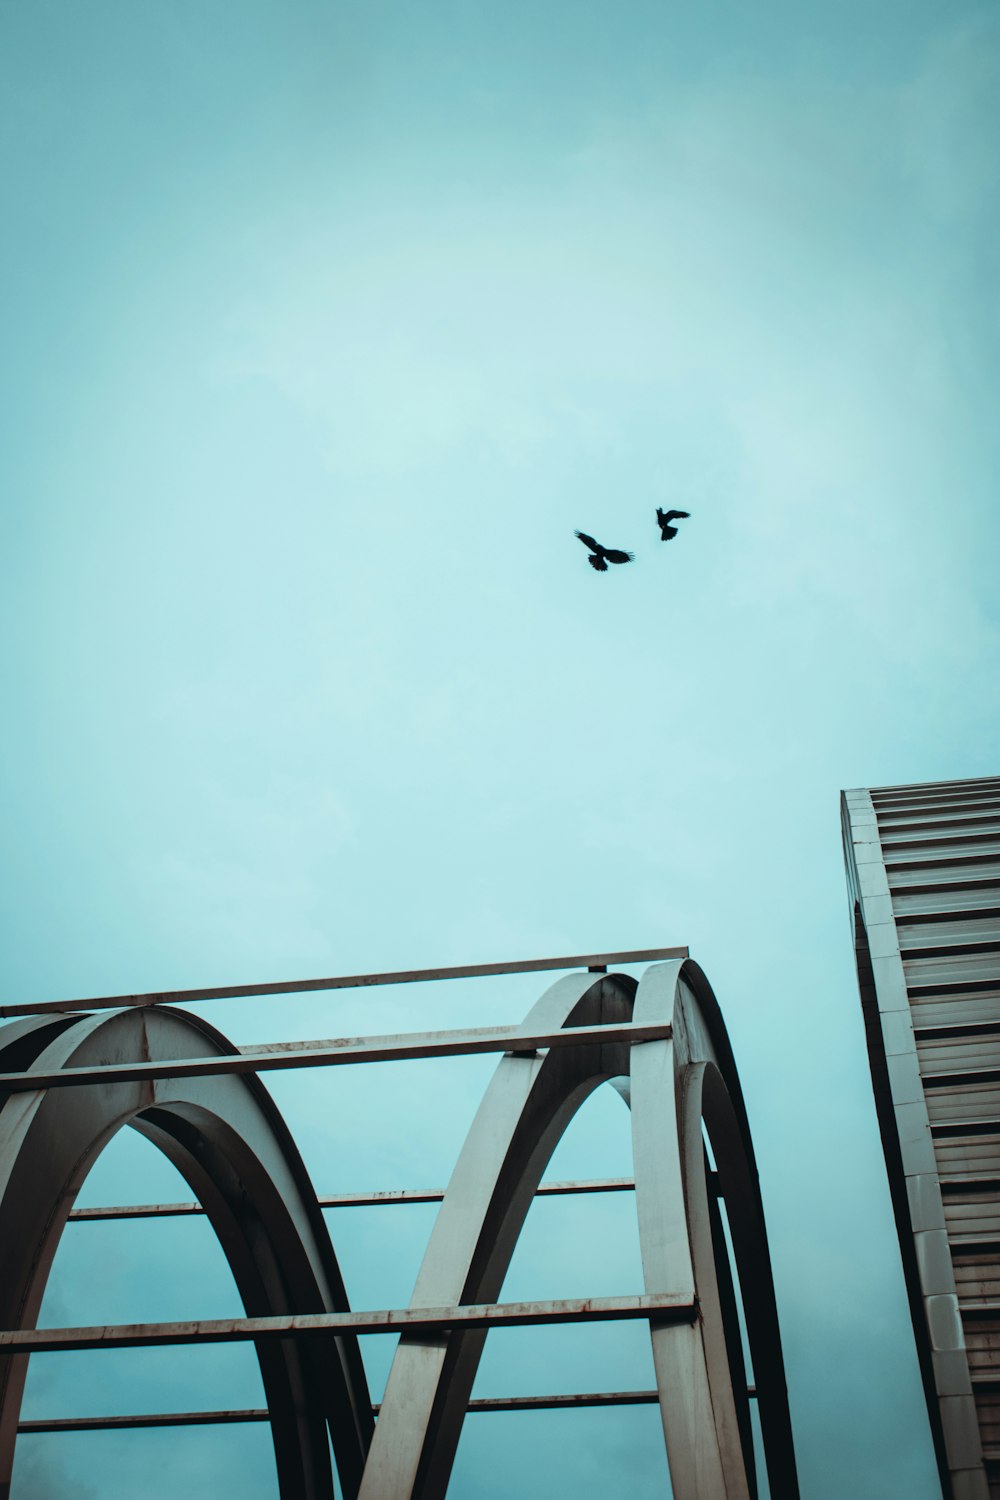 a couple of birds flying over a bridge